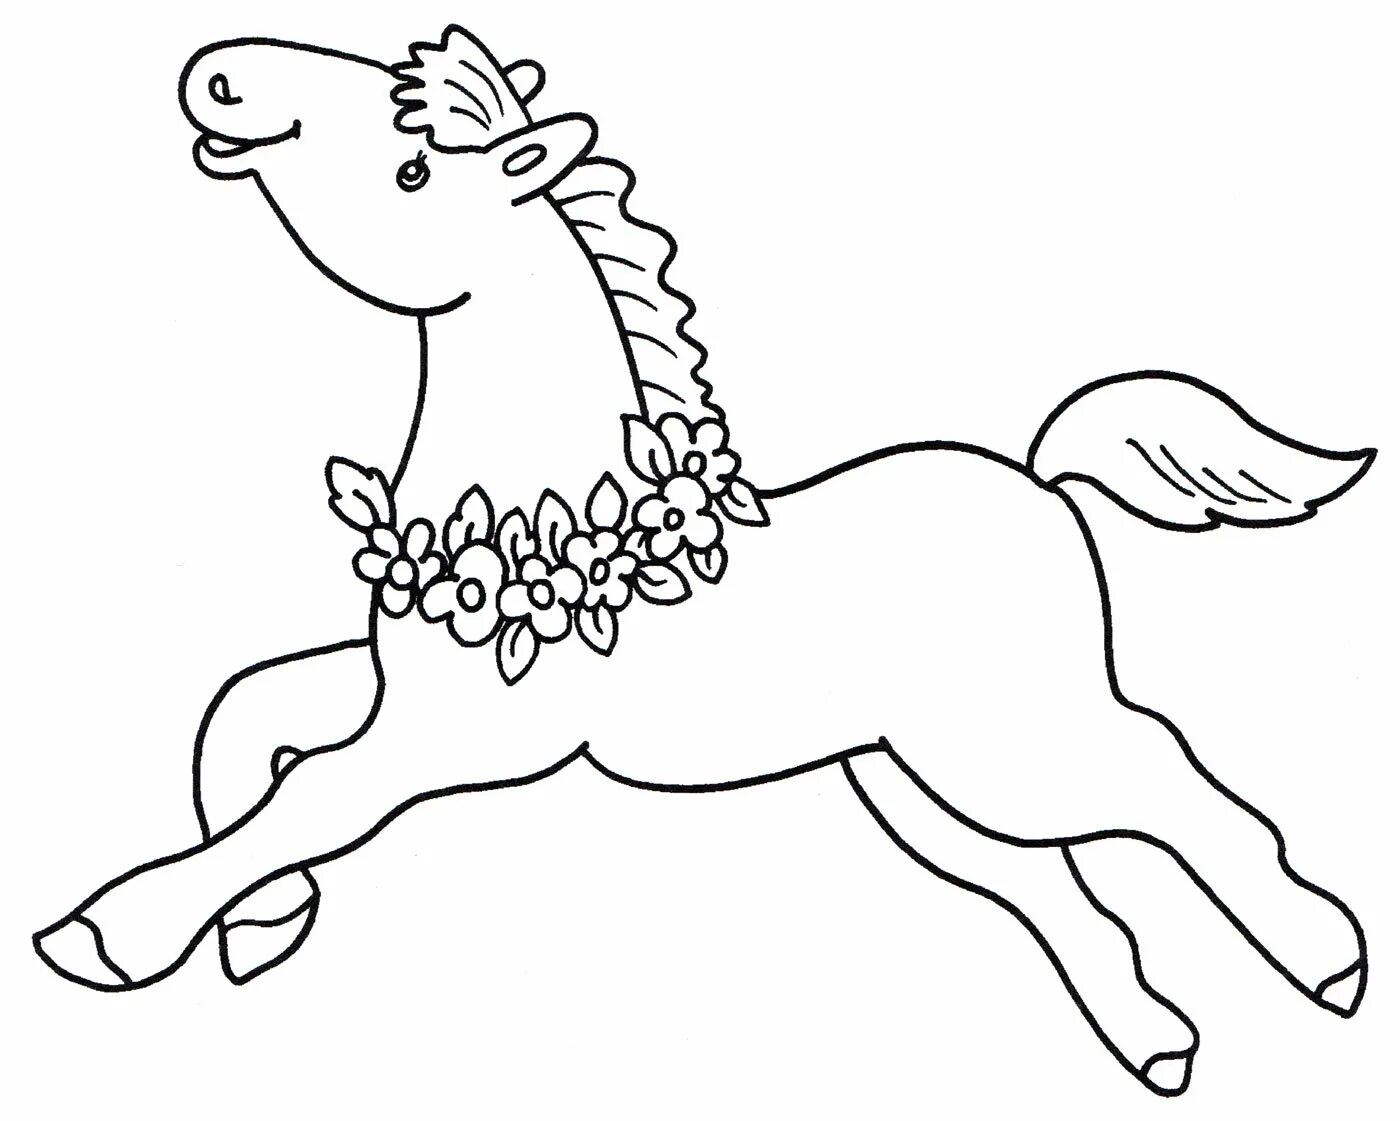 Раскрашиваем лошадку. Раскраска. Лошадка. Лошадка раскраска для детей. Лошадь раскраска для детей. Лошадь раскраска для малышей.